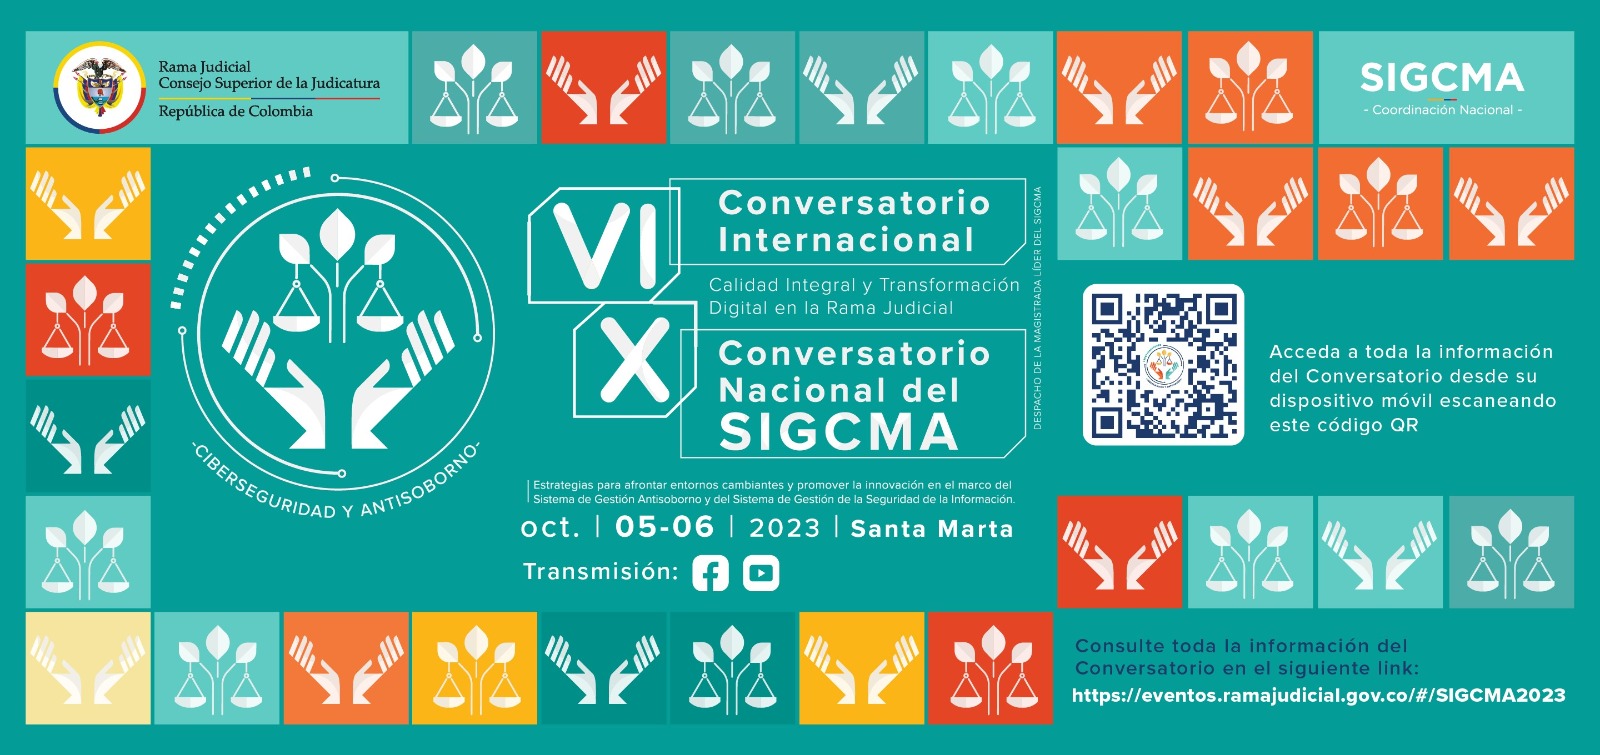 Siga en directo, Conversatorio Nacional e Internacional del SIGCMA